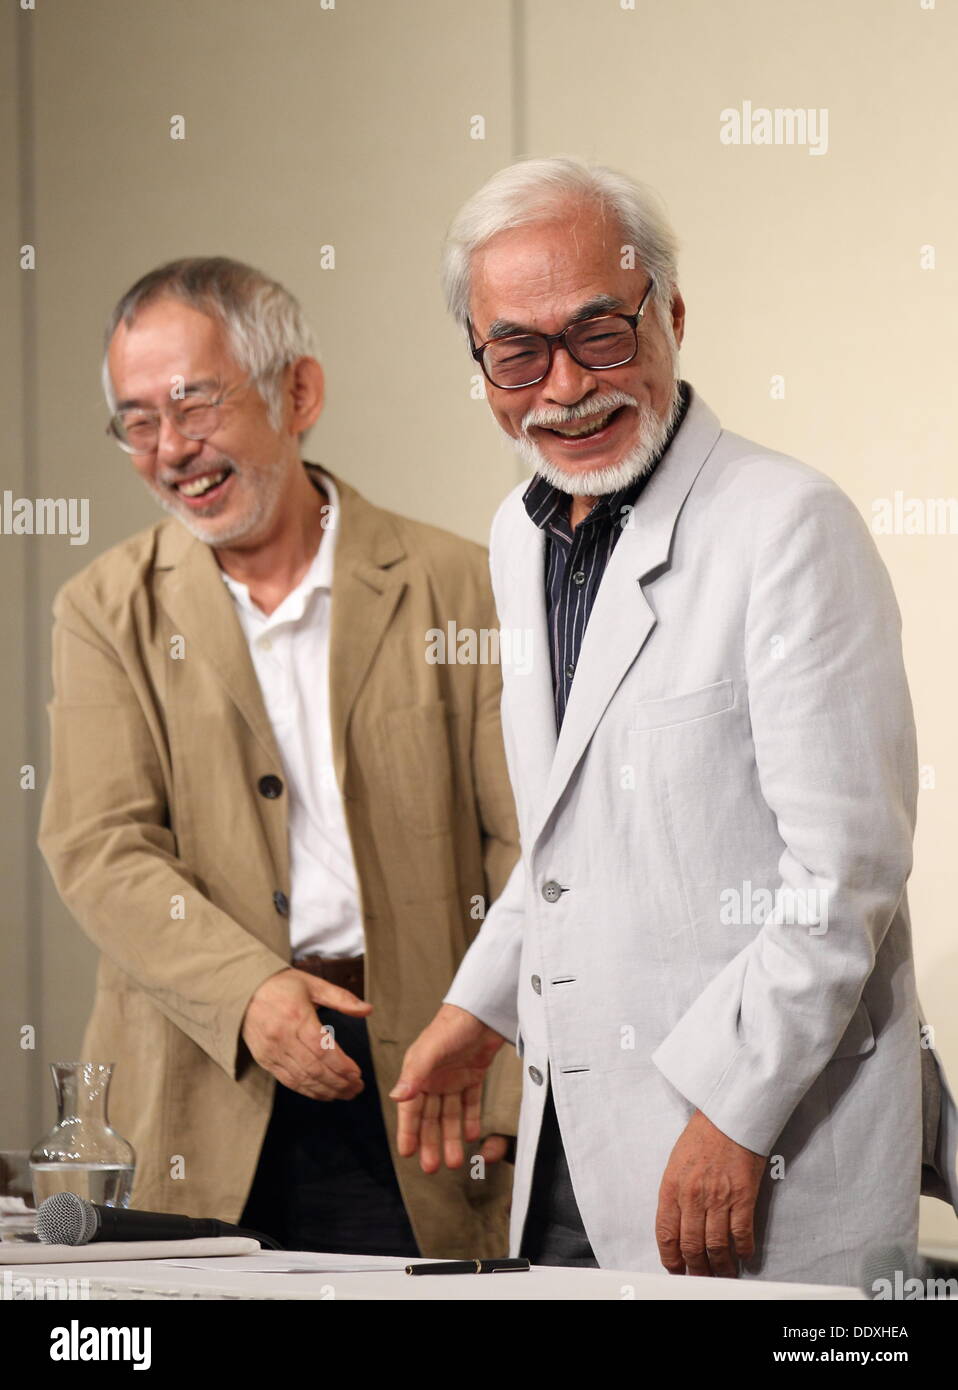 toshio-suzuki-hayao-miyazaki-sep-06-2013-director-hayao-miyazaki-attends-DDXHEA